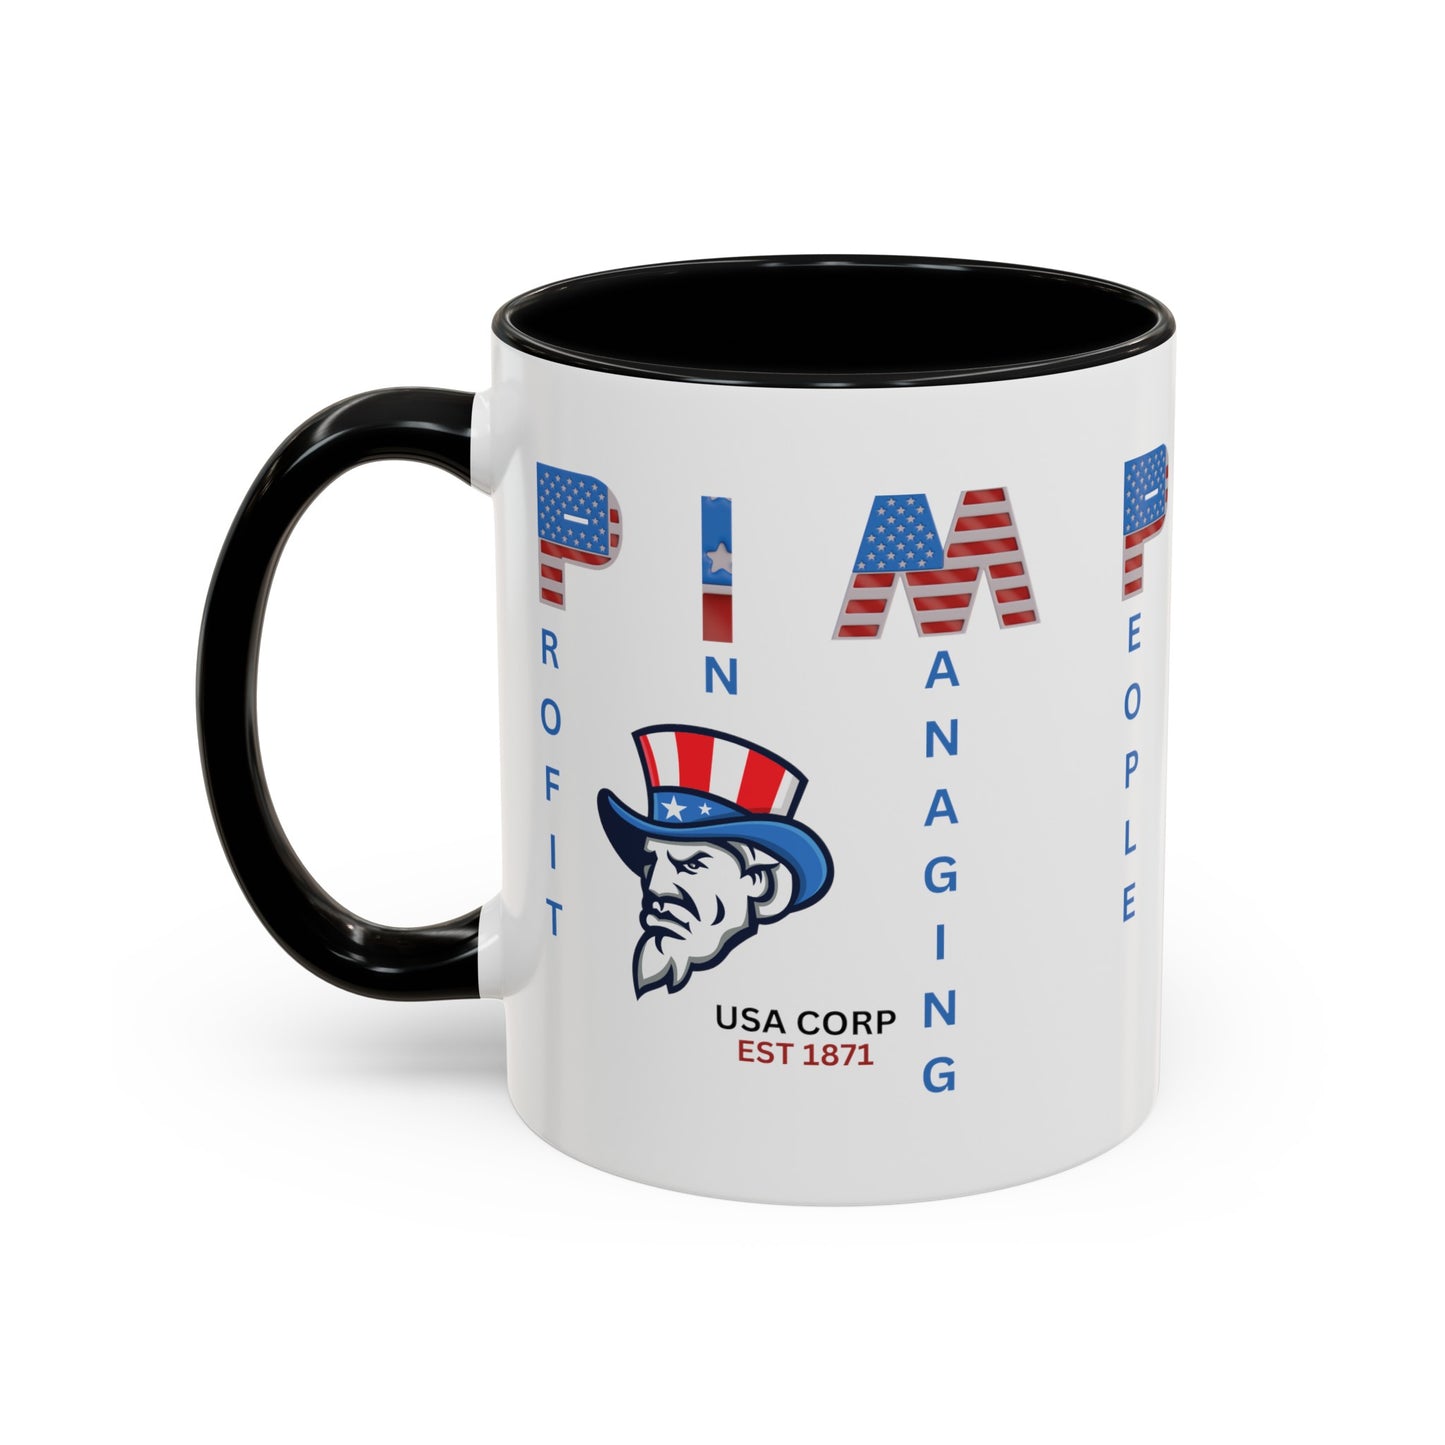 3Gs- Pimp 3 Accent Coffee Mug, 11oz